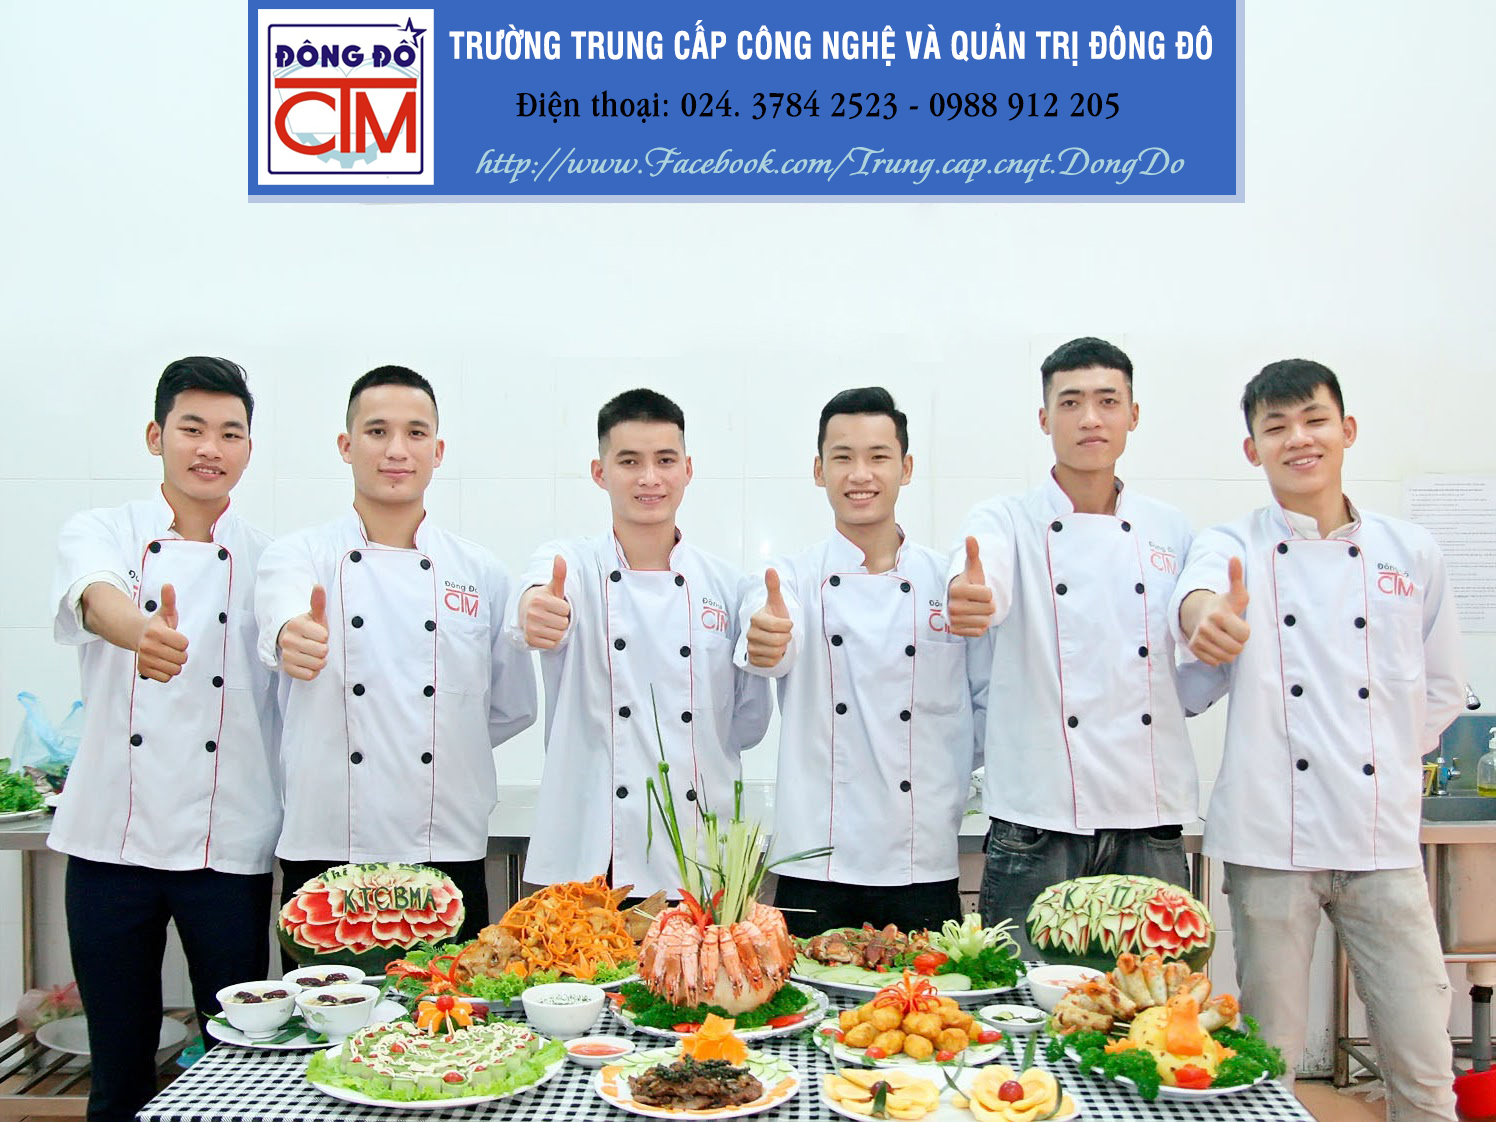 Trung cấp CN&QT Đông Đô là địa chỉ dạy nghề đầu bếp uy tín tại Hà Nội!Liên tục mở các lớp trung cấp nấu ăn, chứng chỉ nấu ăn